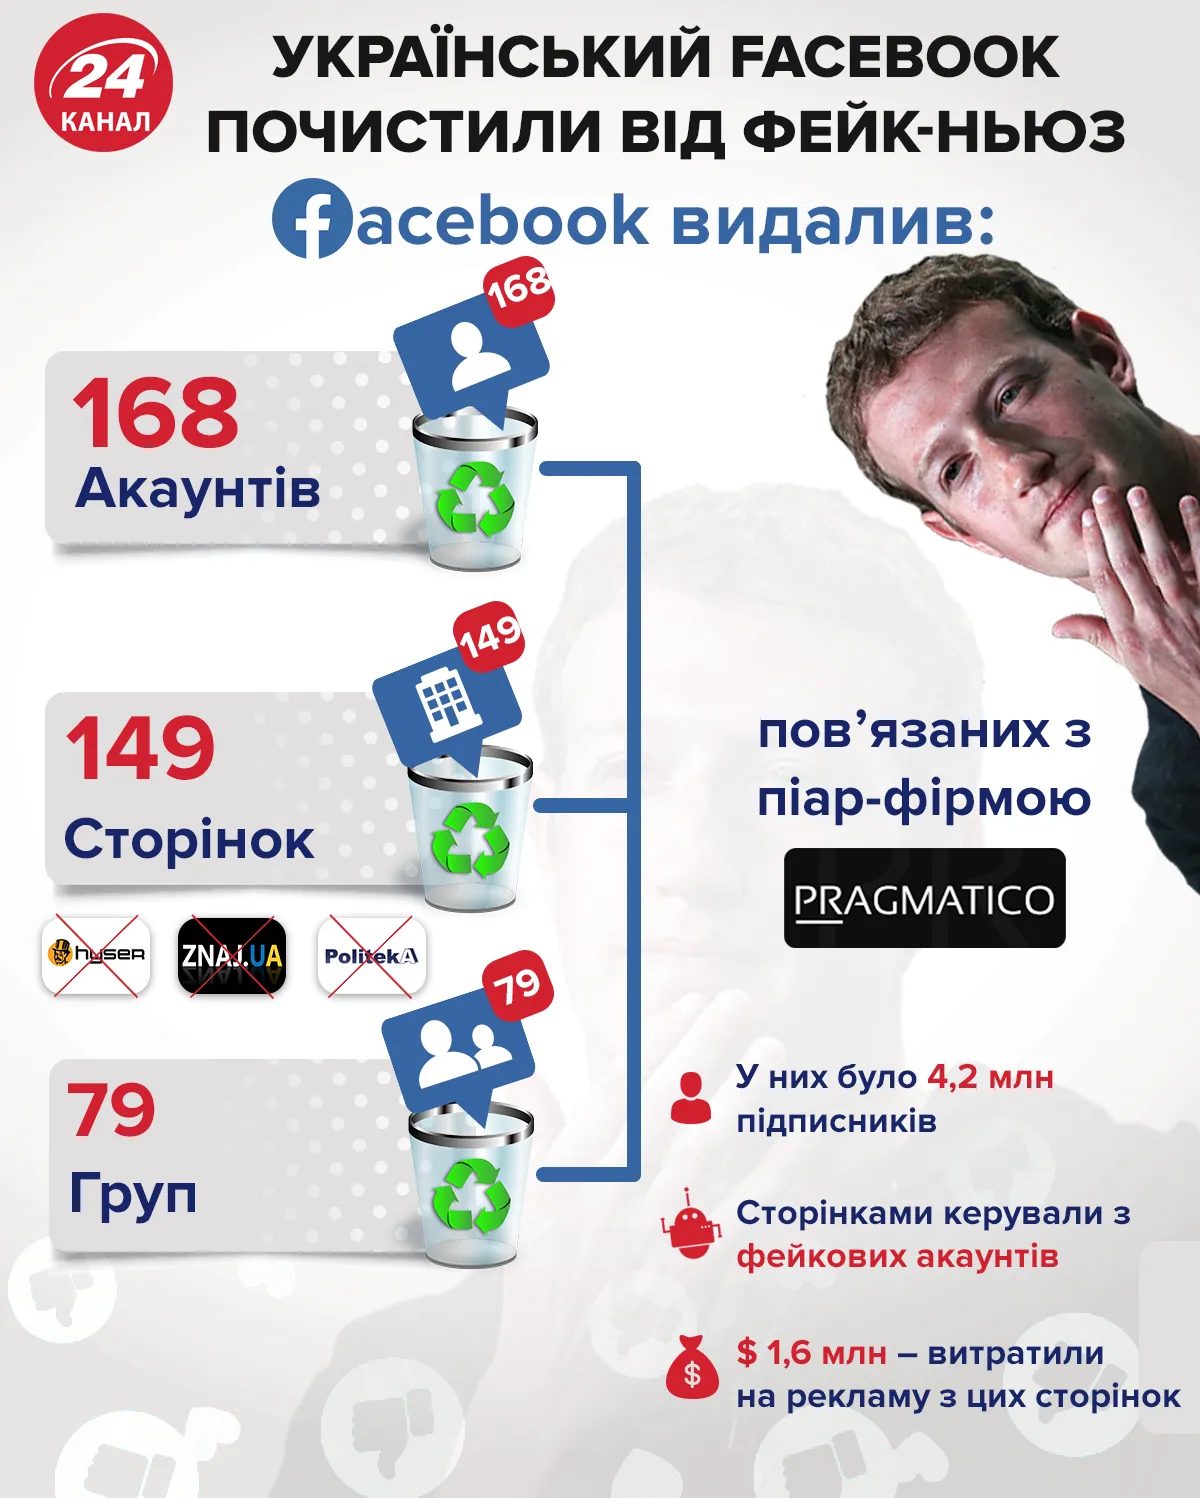 Facebook, Украина, СМИ, информационные ресурсы, удалили 